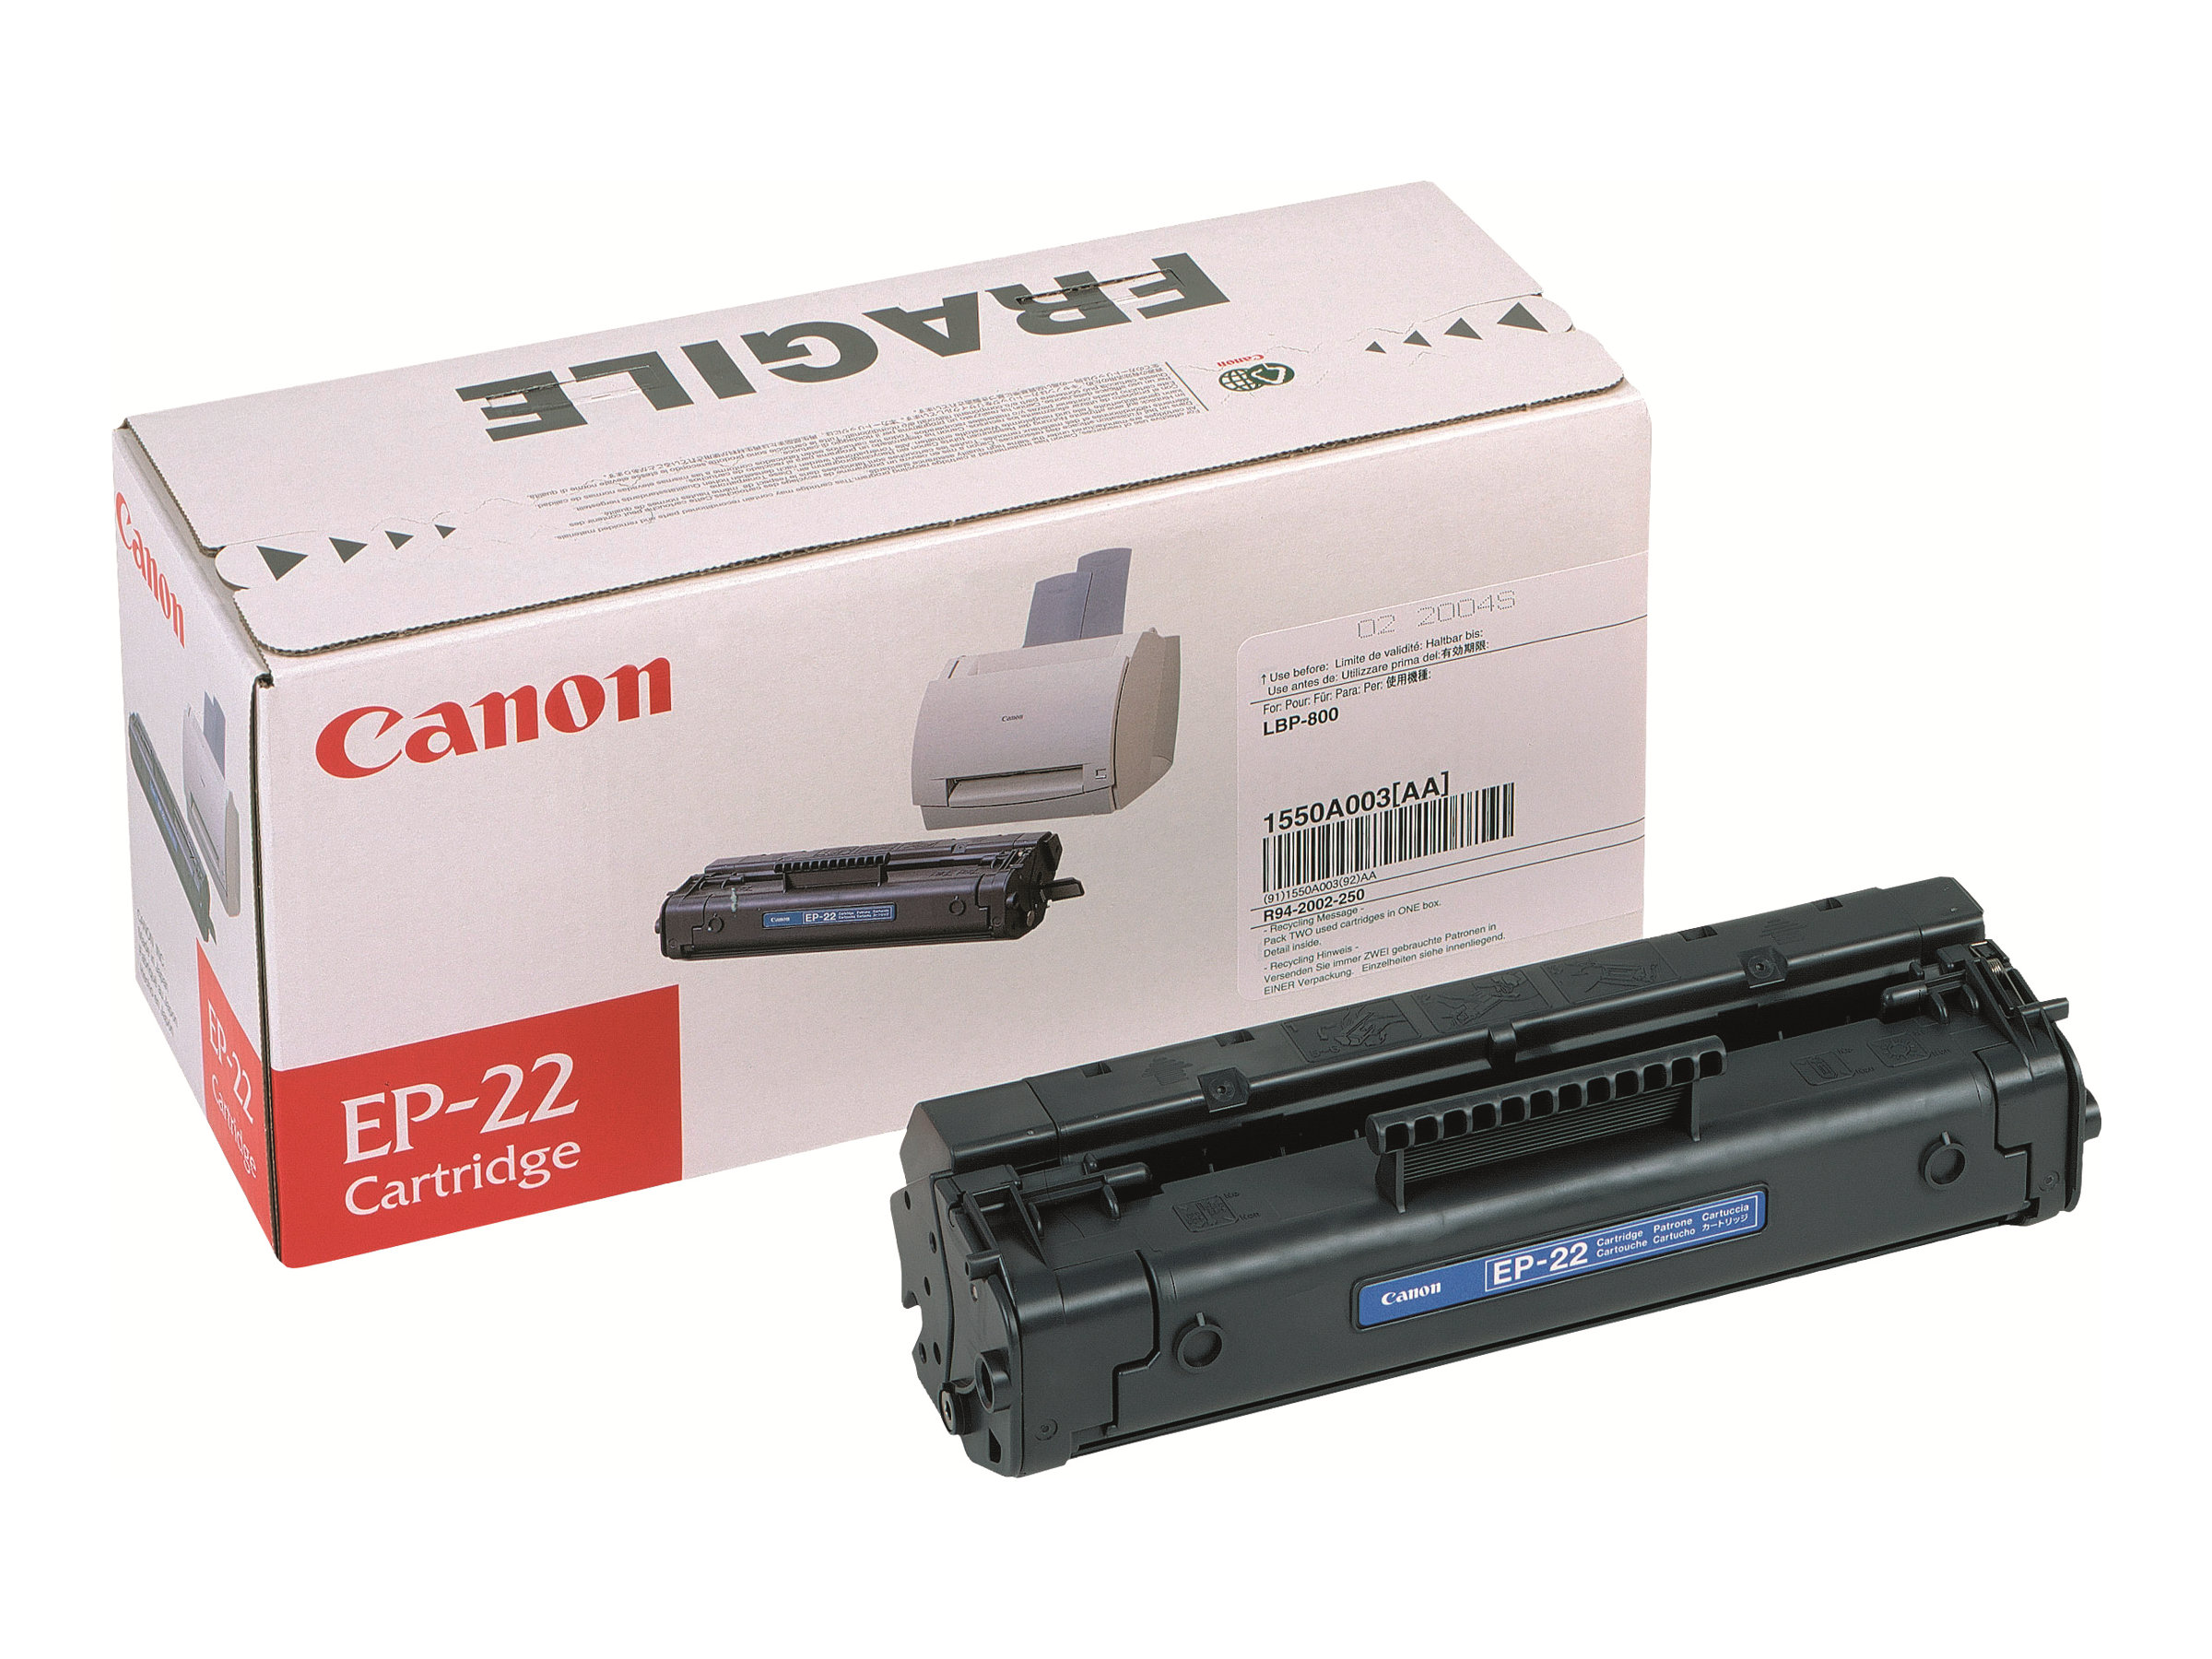 Canon EP-22 - Noir - original - cartouche de toner - pour Laser Shot LBP-1120; LBP-1110, 1110 Premium, 1110SE, 1120, 250, 350, 5585, 800, 810 - 1550A003 - Cartouches de toner Canon